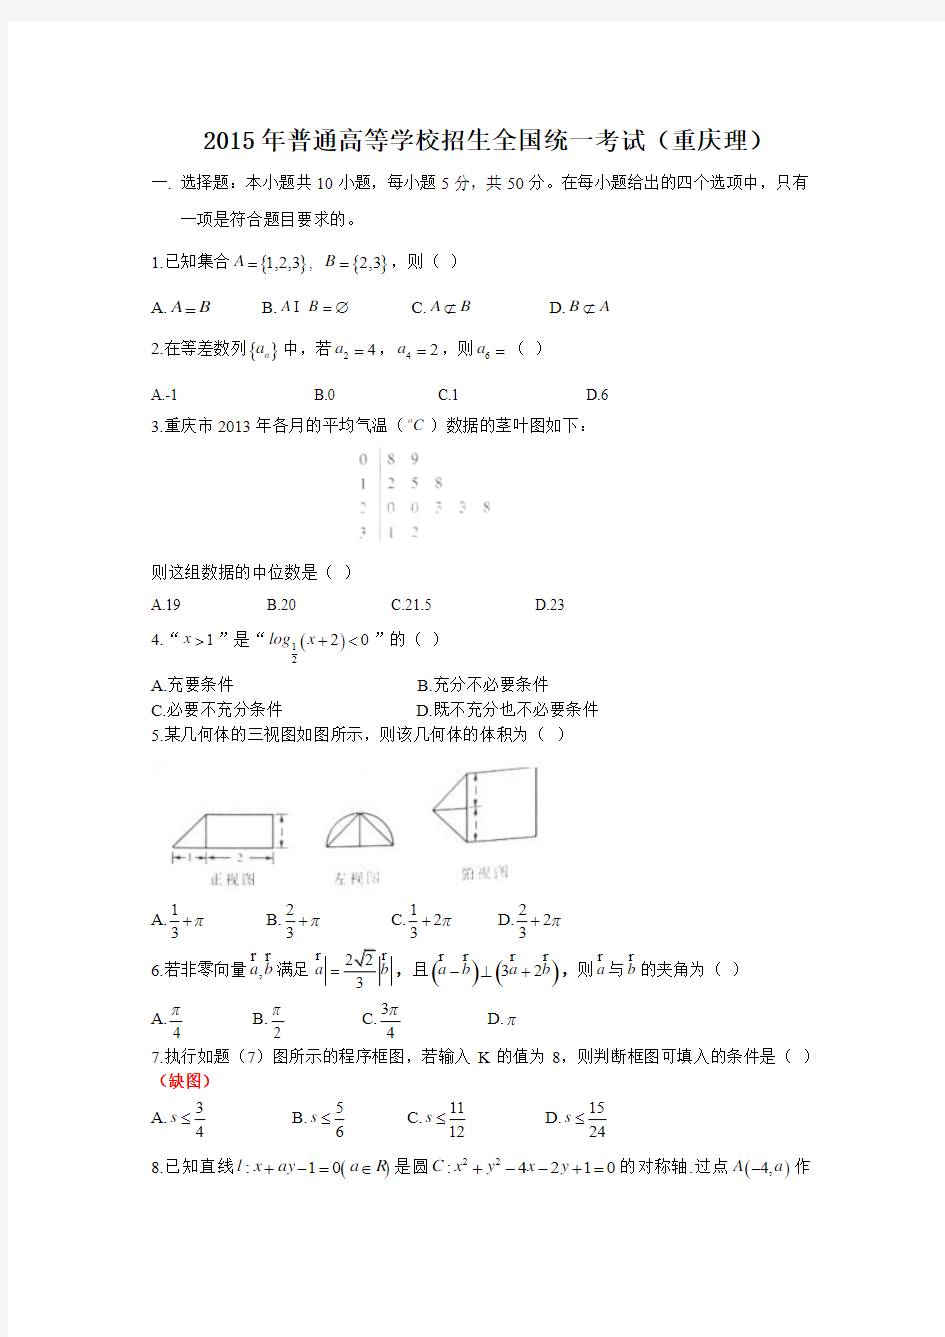 2015年-高考试卷及答案解析-数学-理科-重庆(精校版)